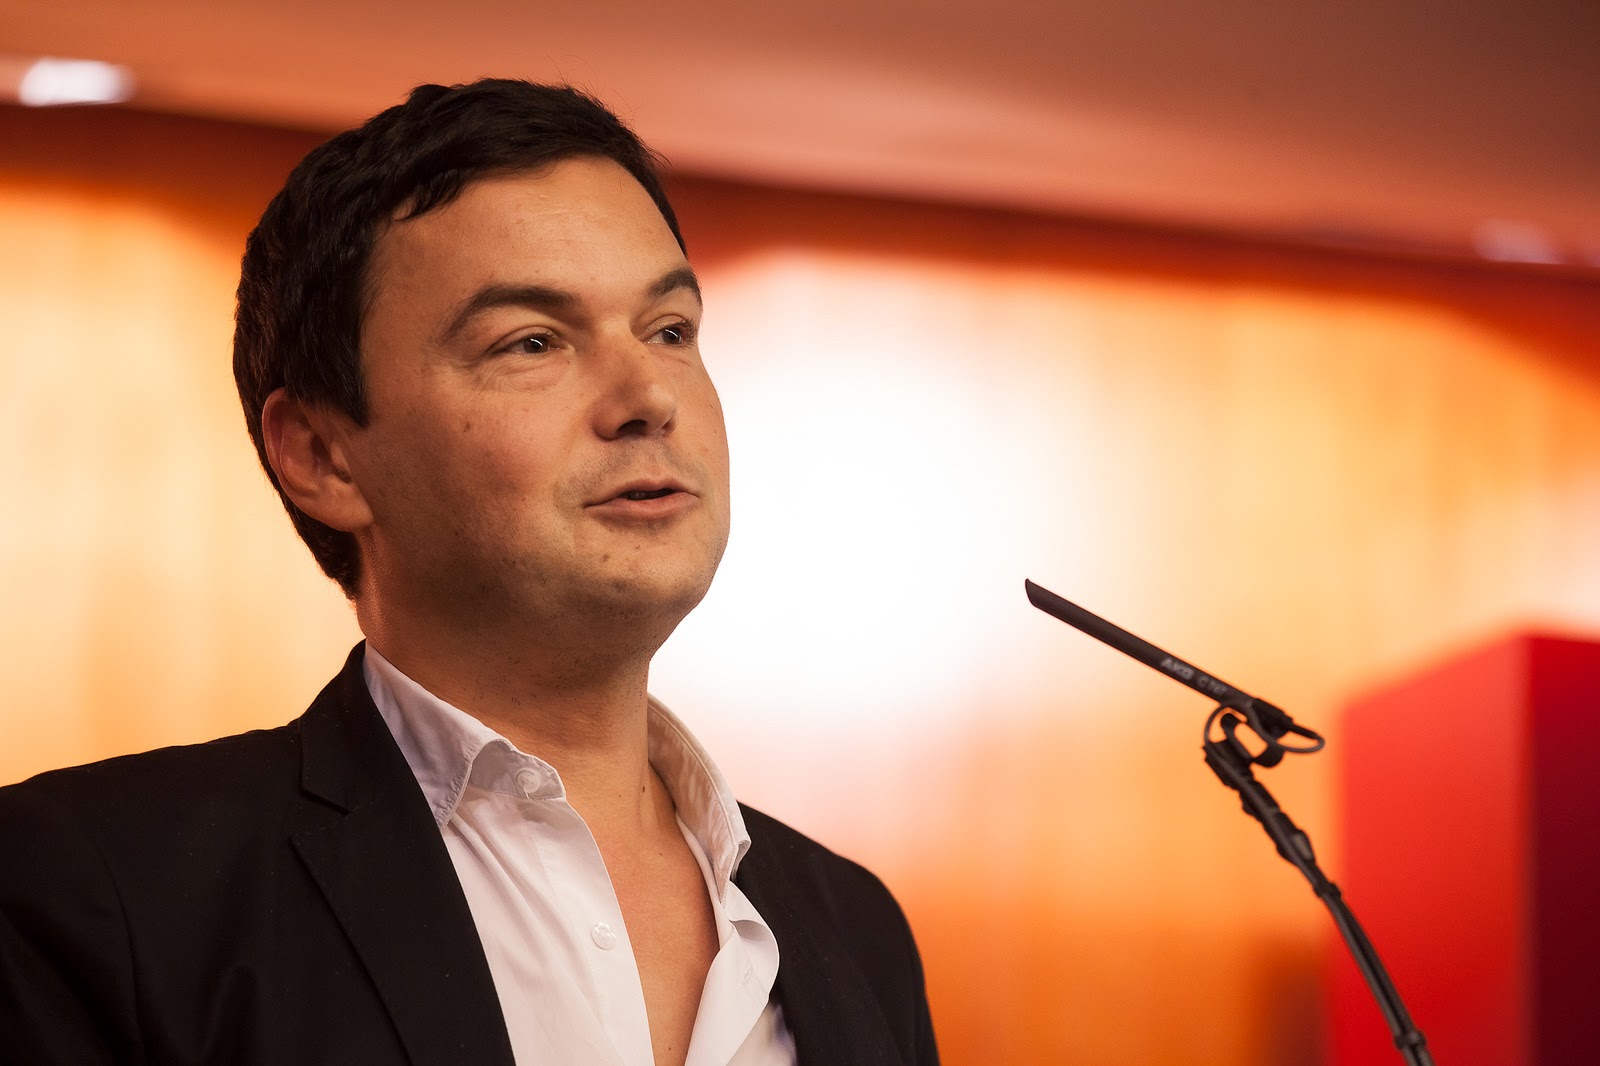 Thomas Piketty: Volkswirt, Autor und Initiator einer weltweiten Debatte über soziale Ungleichheit. Vortrag an der Universitat Pompeu Fabra Oktober 2014.